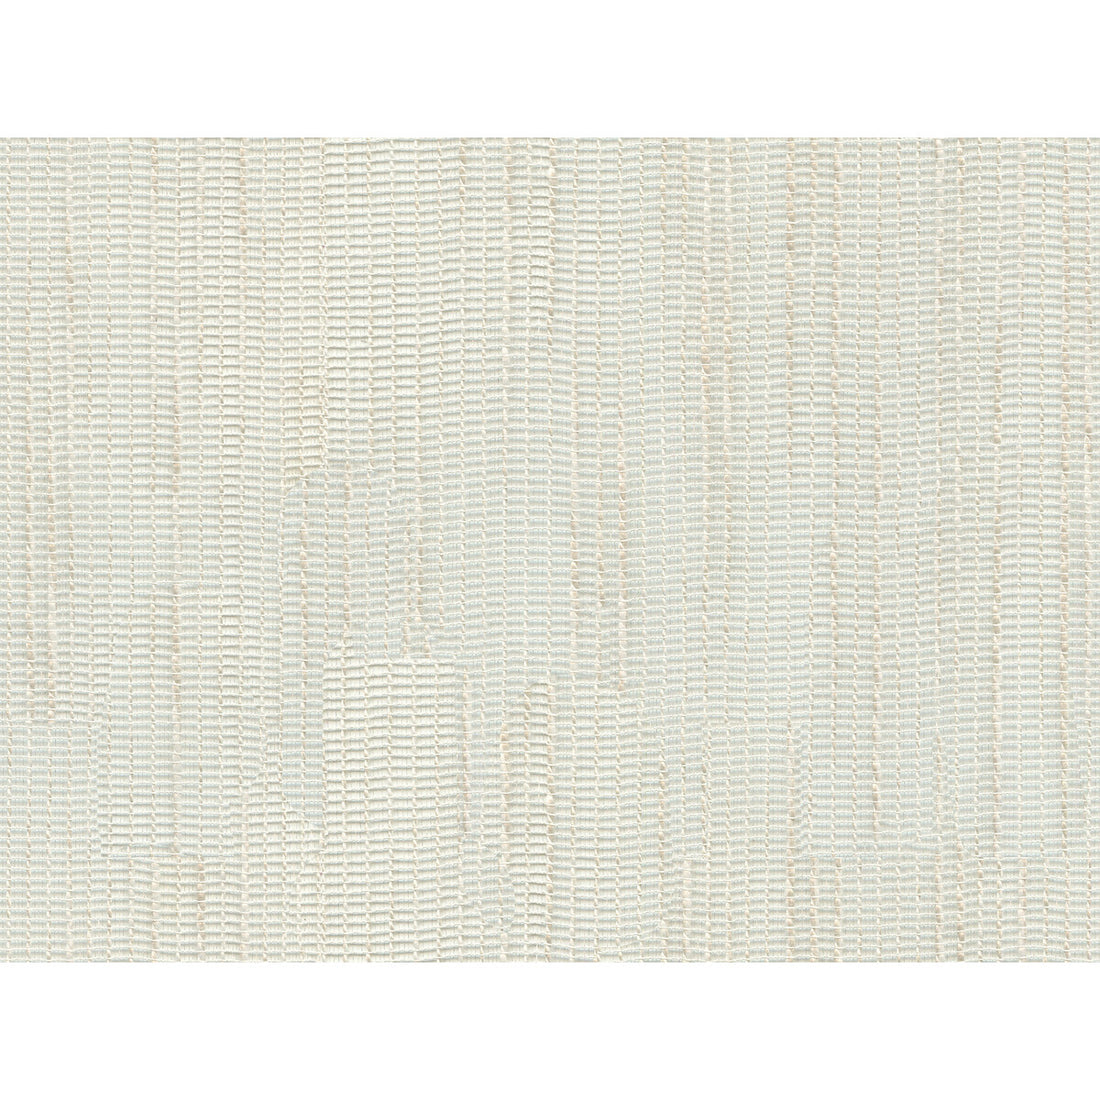 Kravet Basics fabric in 4487-1 color - pattern 4487.1.0 - by Kravet Basics